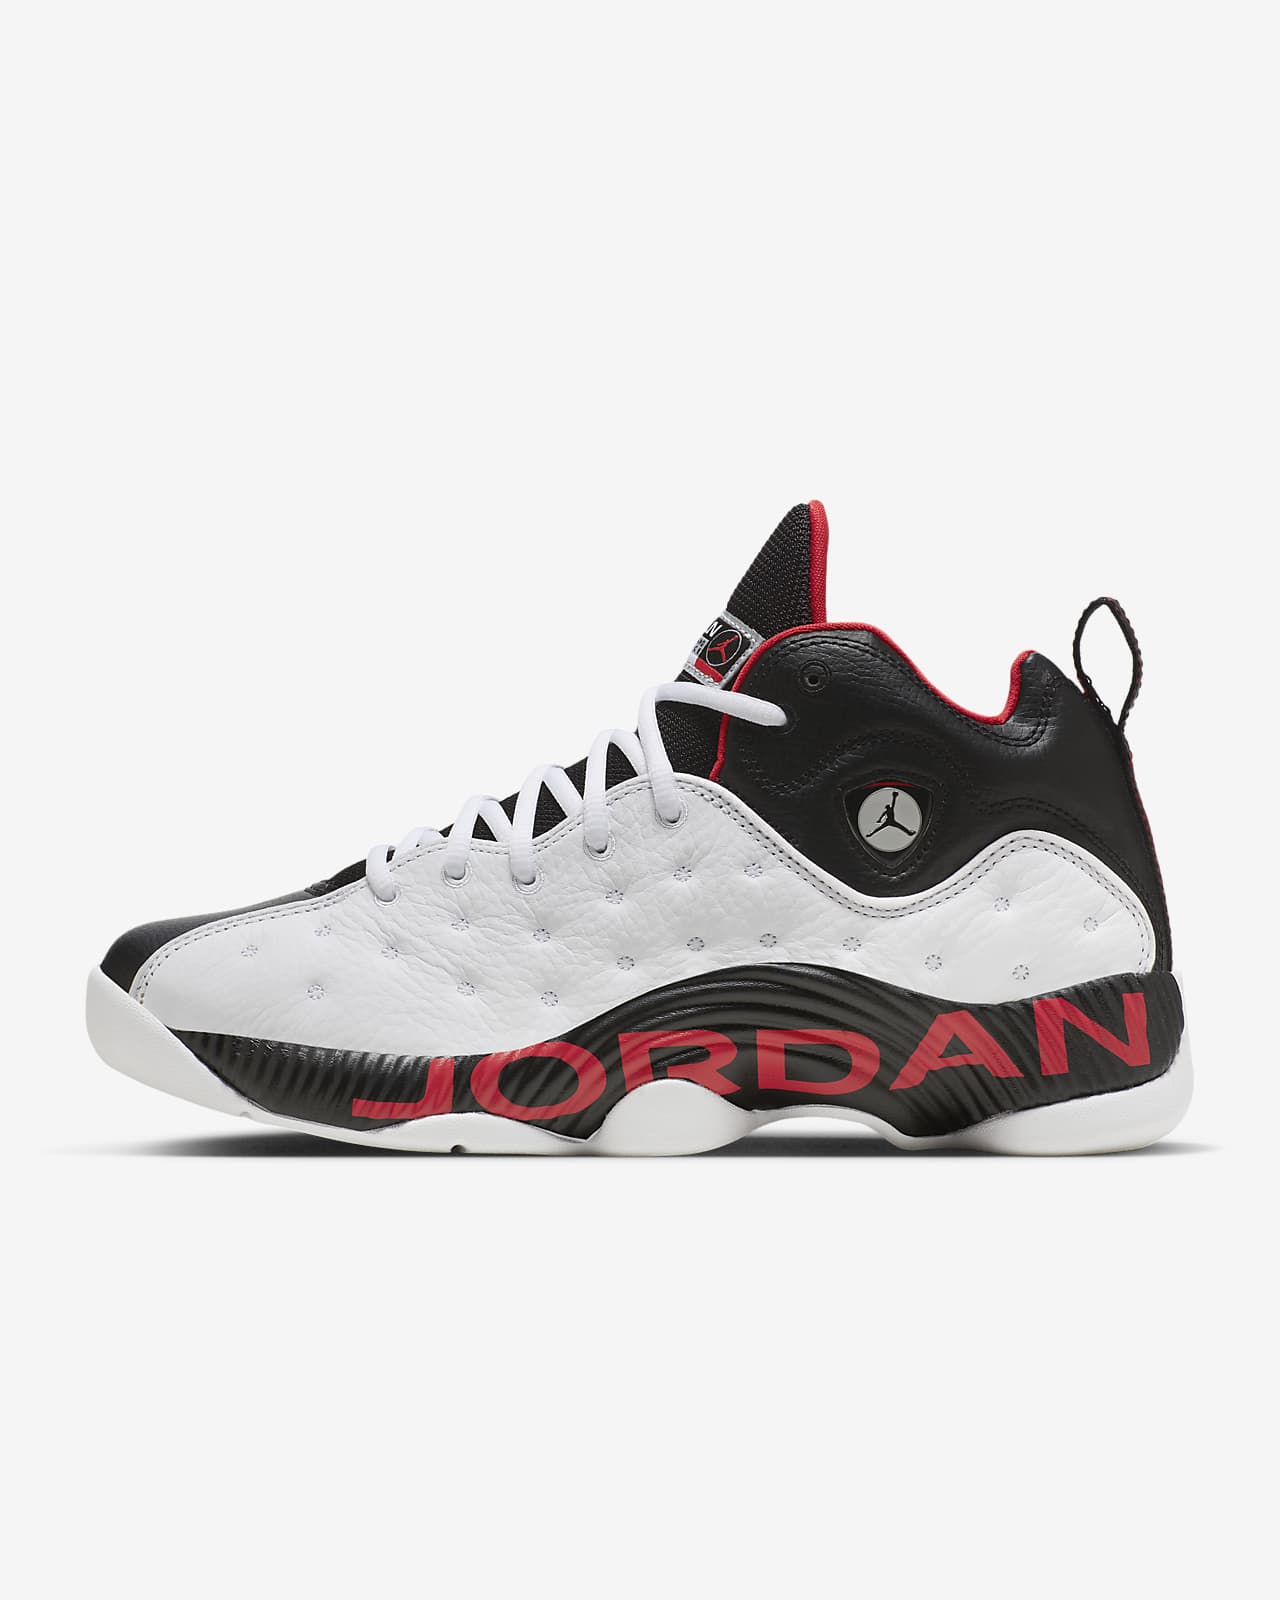 Calzado para hombre Jordan II. Nike.com